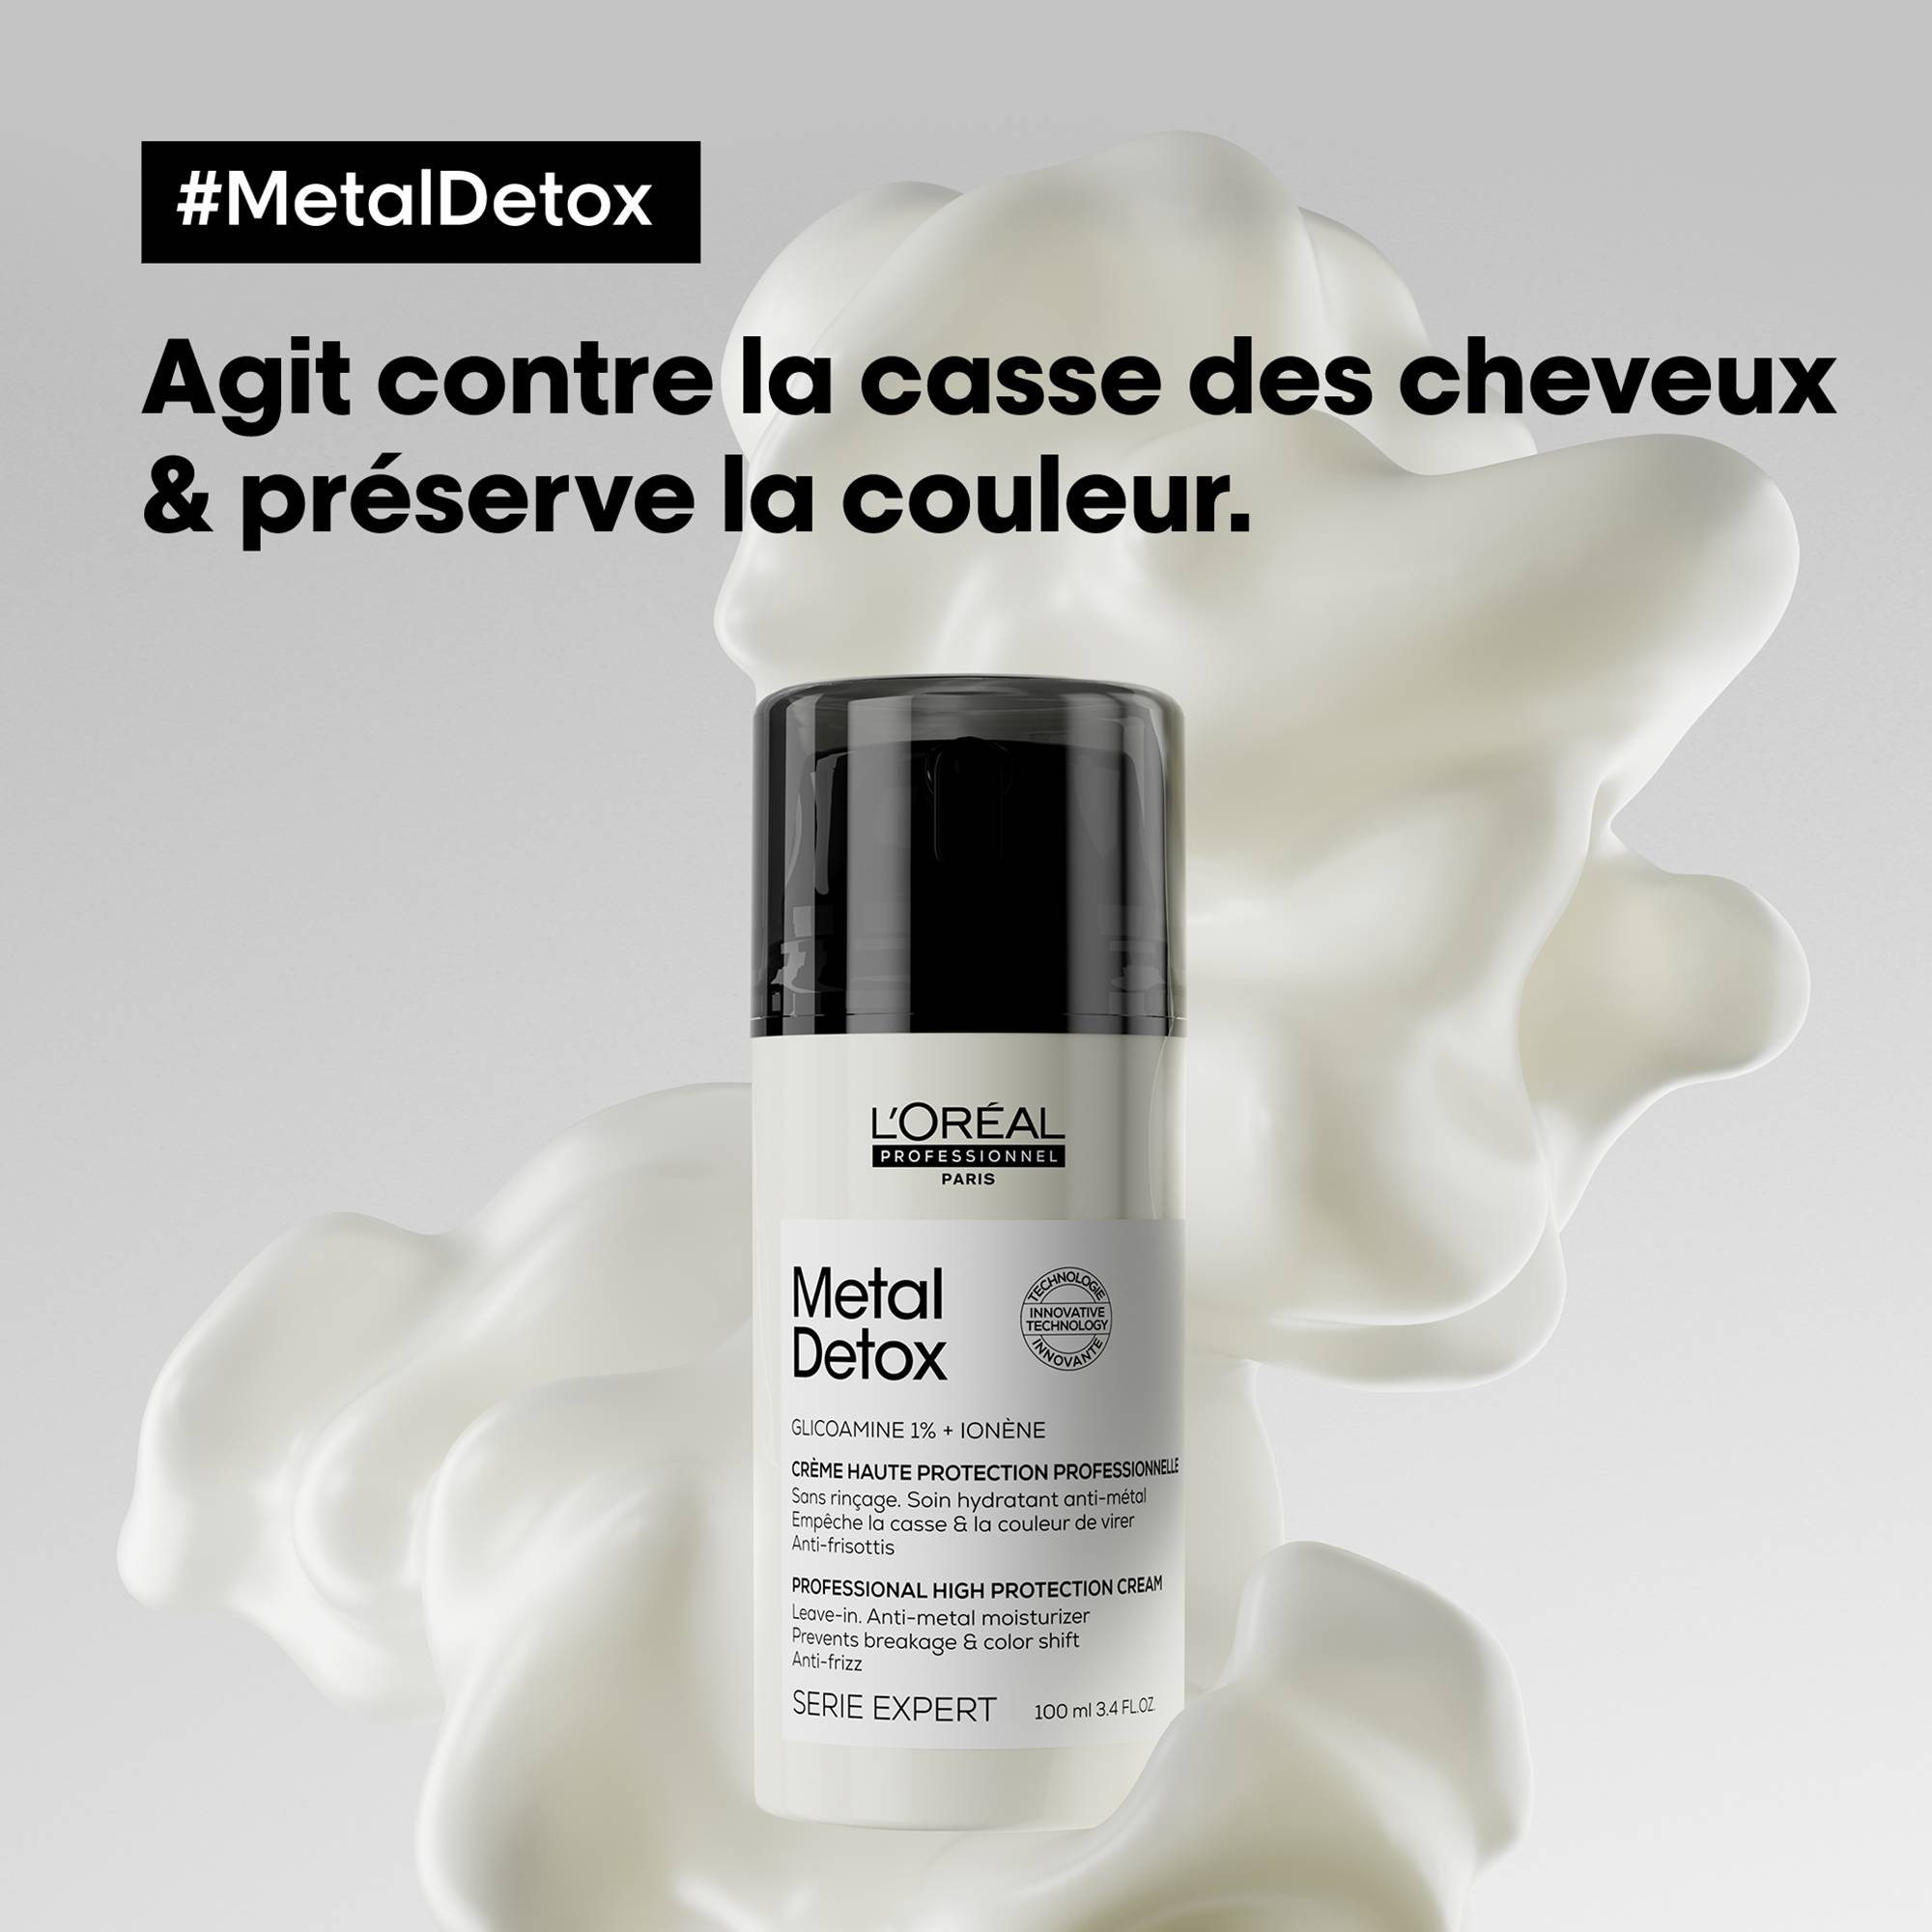 Crème haute protection sans rinçage Metal Detox de la marque L'Oréal Professionnel Contenance 100ml - 3